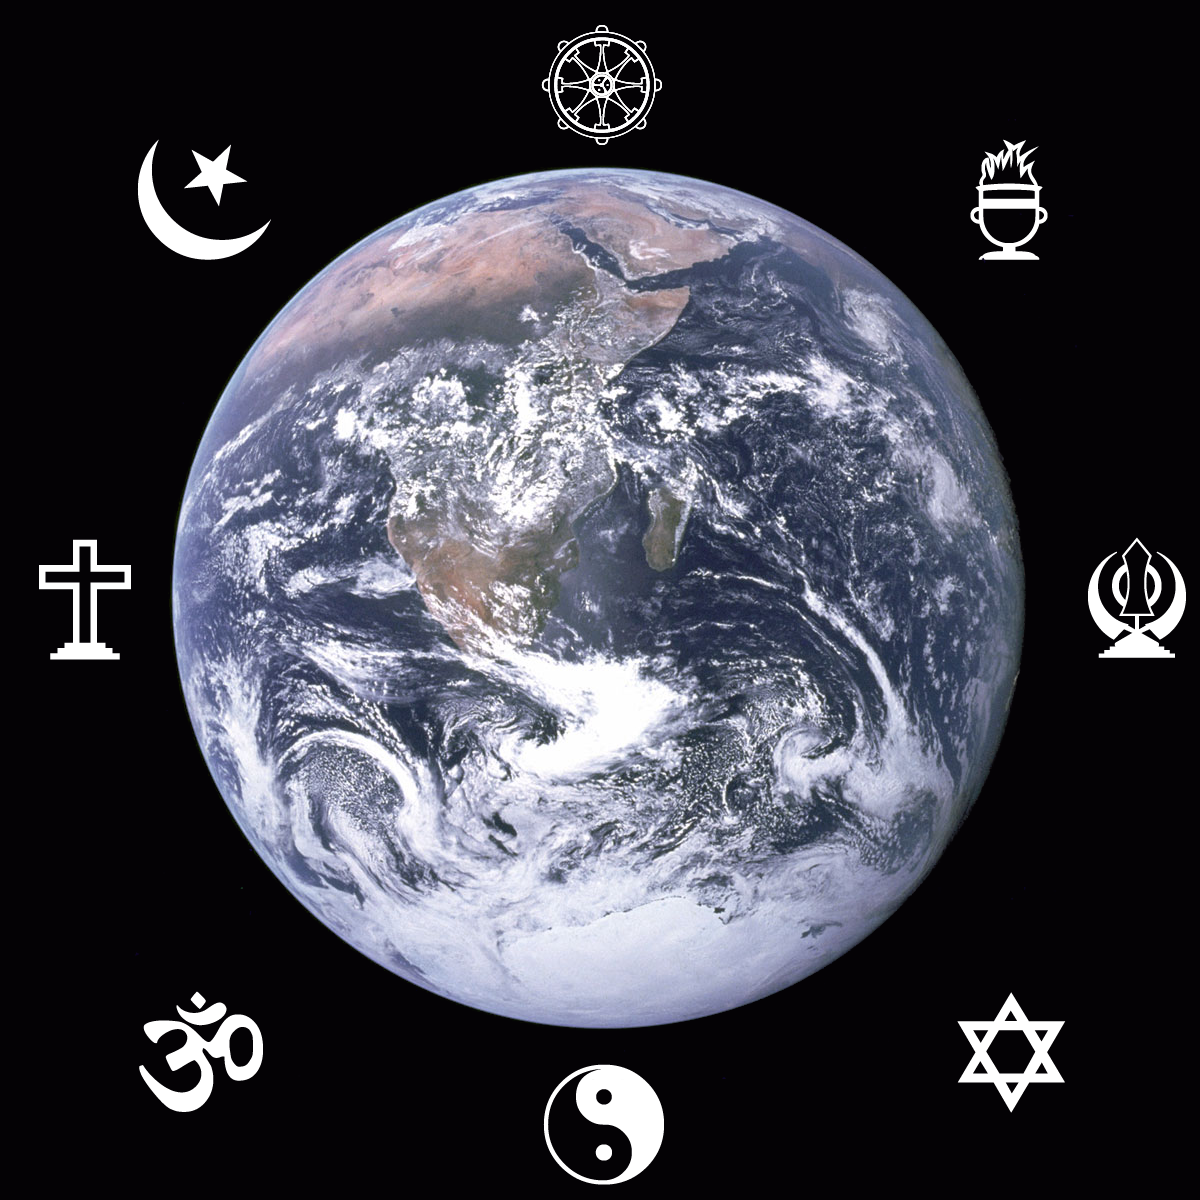 Faith Logos with the Blue Marble Earth